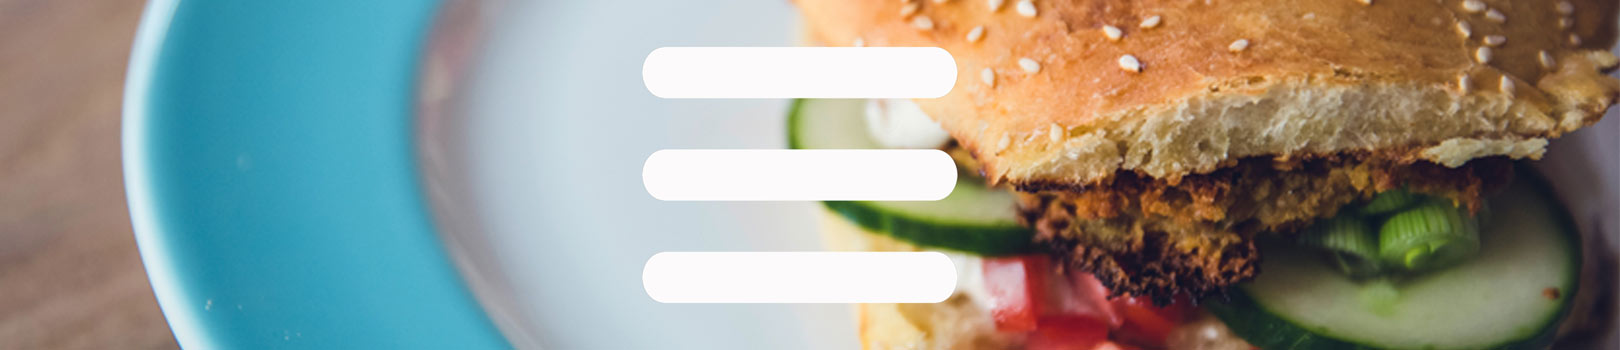 hamburger menu icon